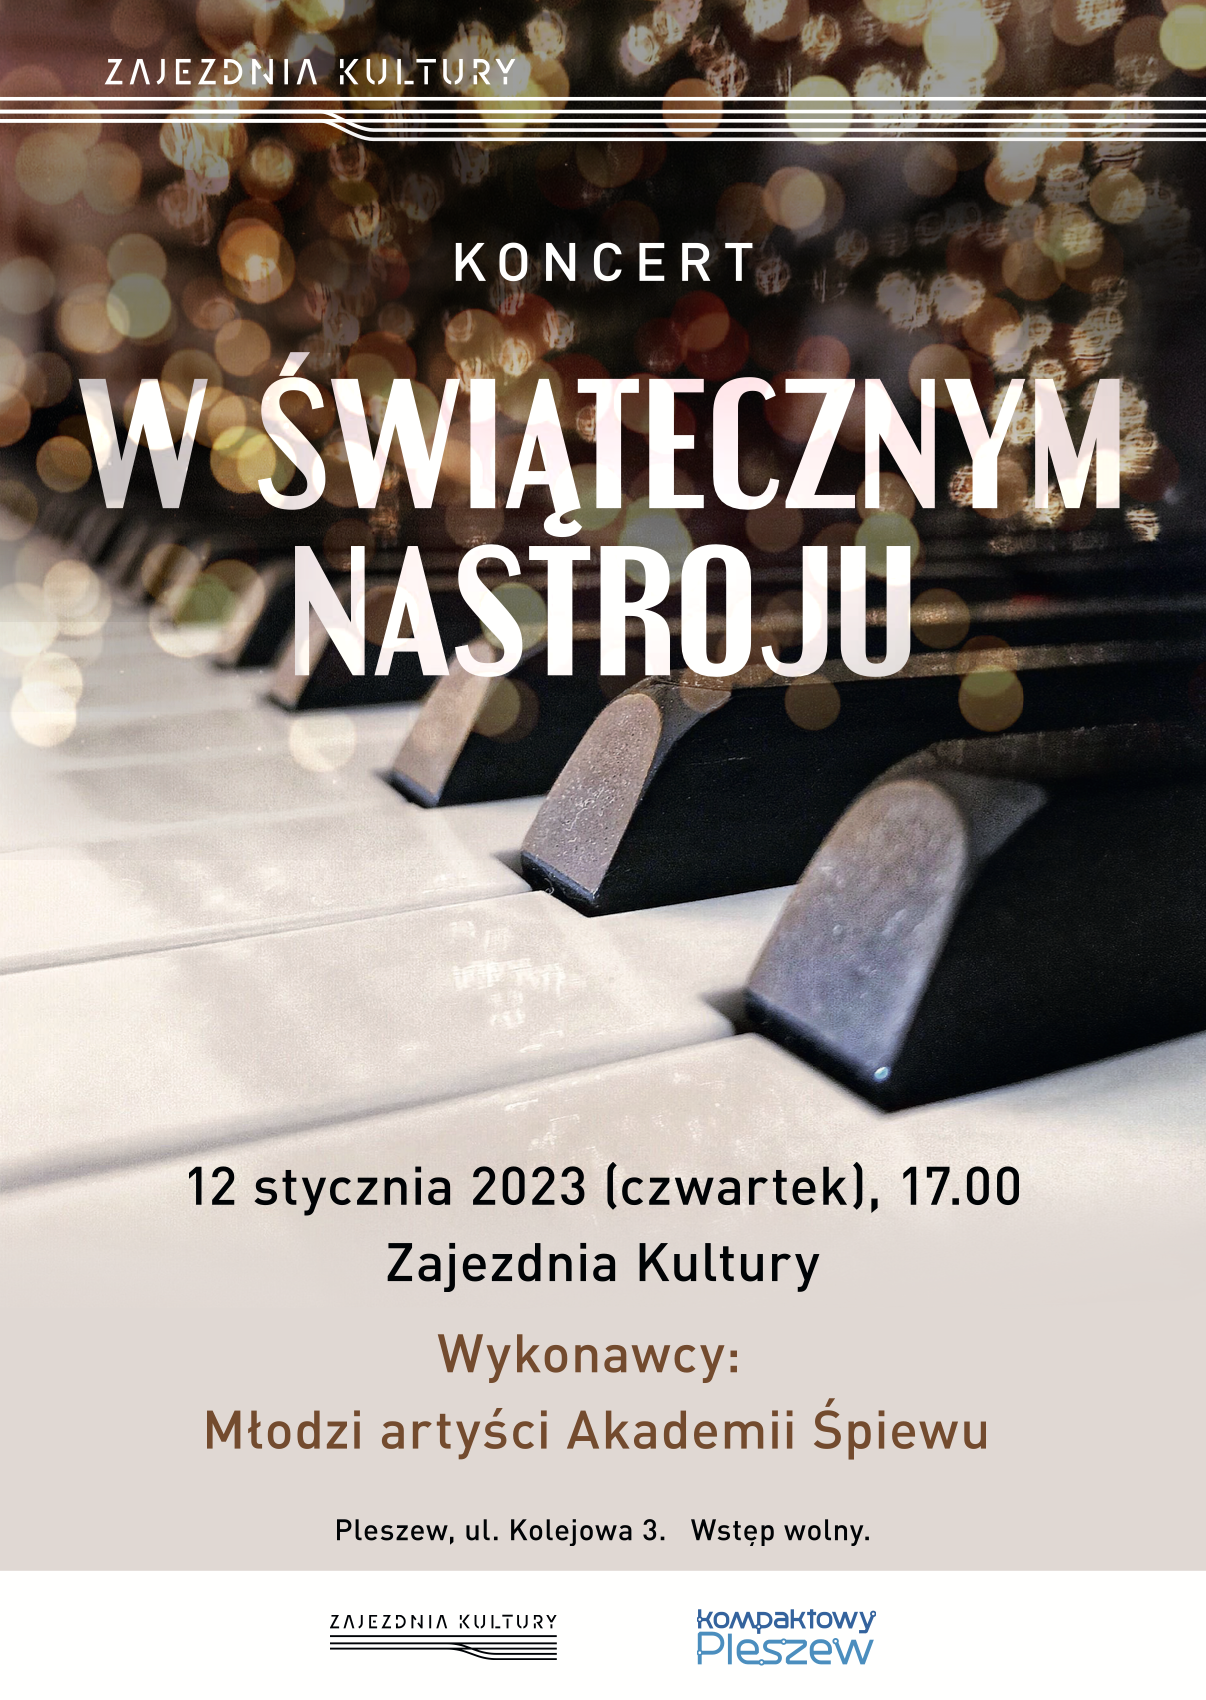 Plakat koncertu "W świątecznym nastroju" odbywającego się w Zajezdni Kultury w Pleszewie 12 stycznia 2023r. o godzinie 17:00